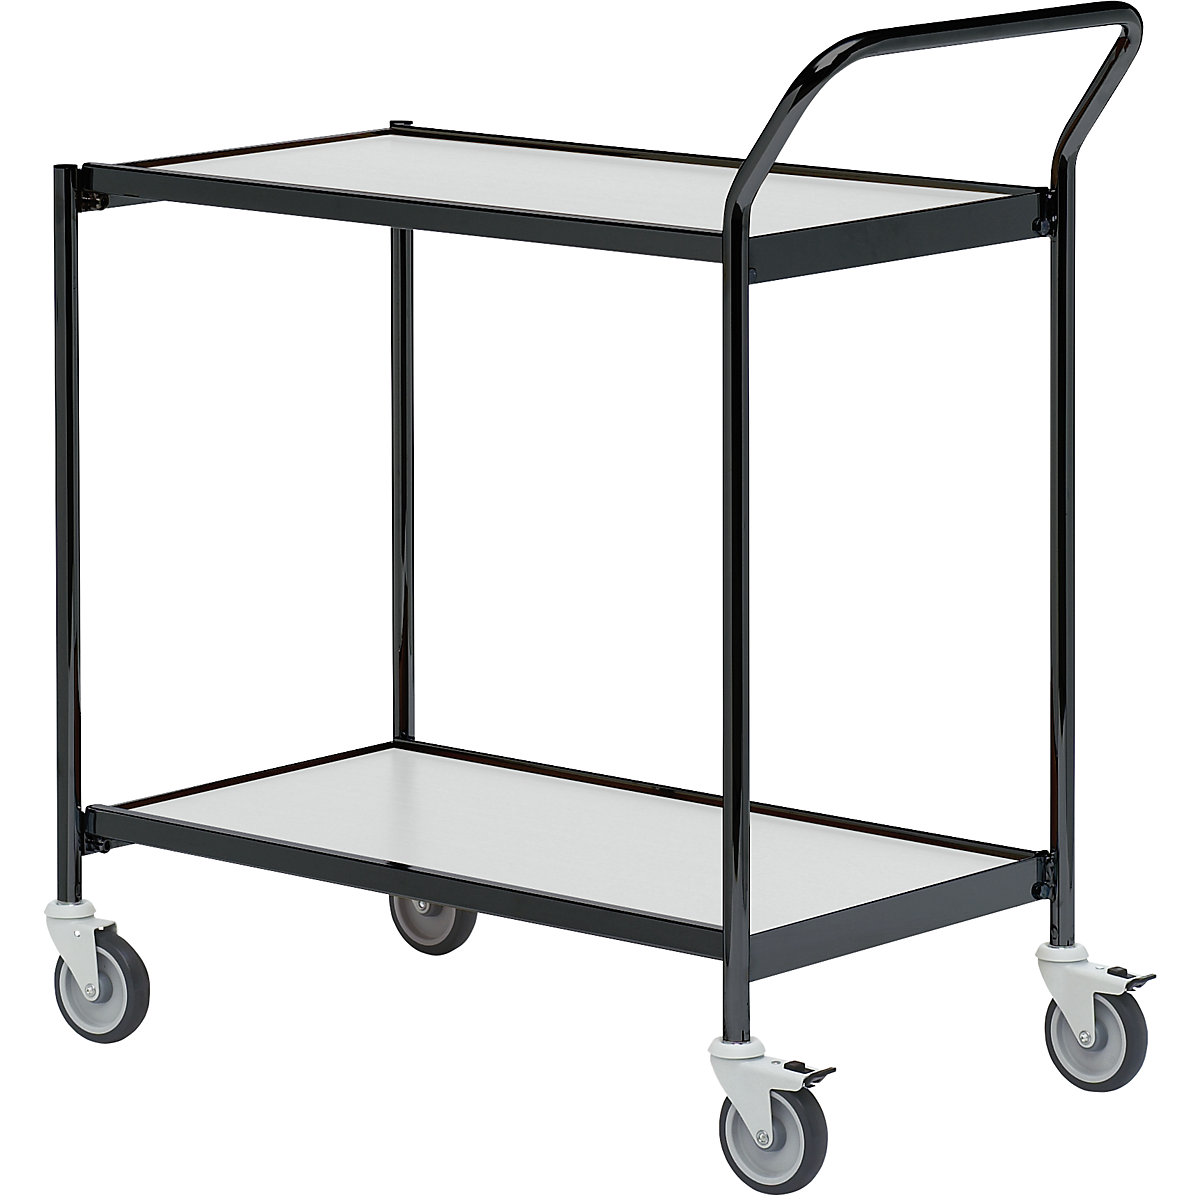 Stolový vozík – HelgeNyberg, 2 etáže, d x š 1000 x 420 mm, černá / šedá, od 5 ks-21